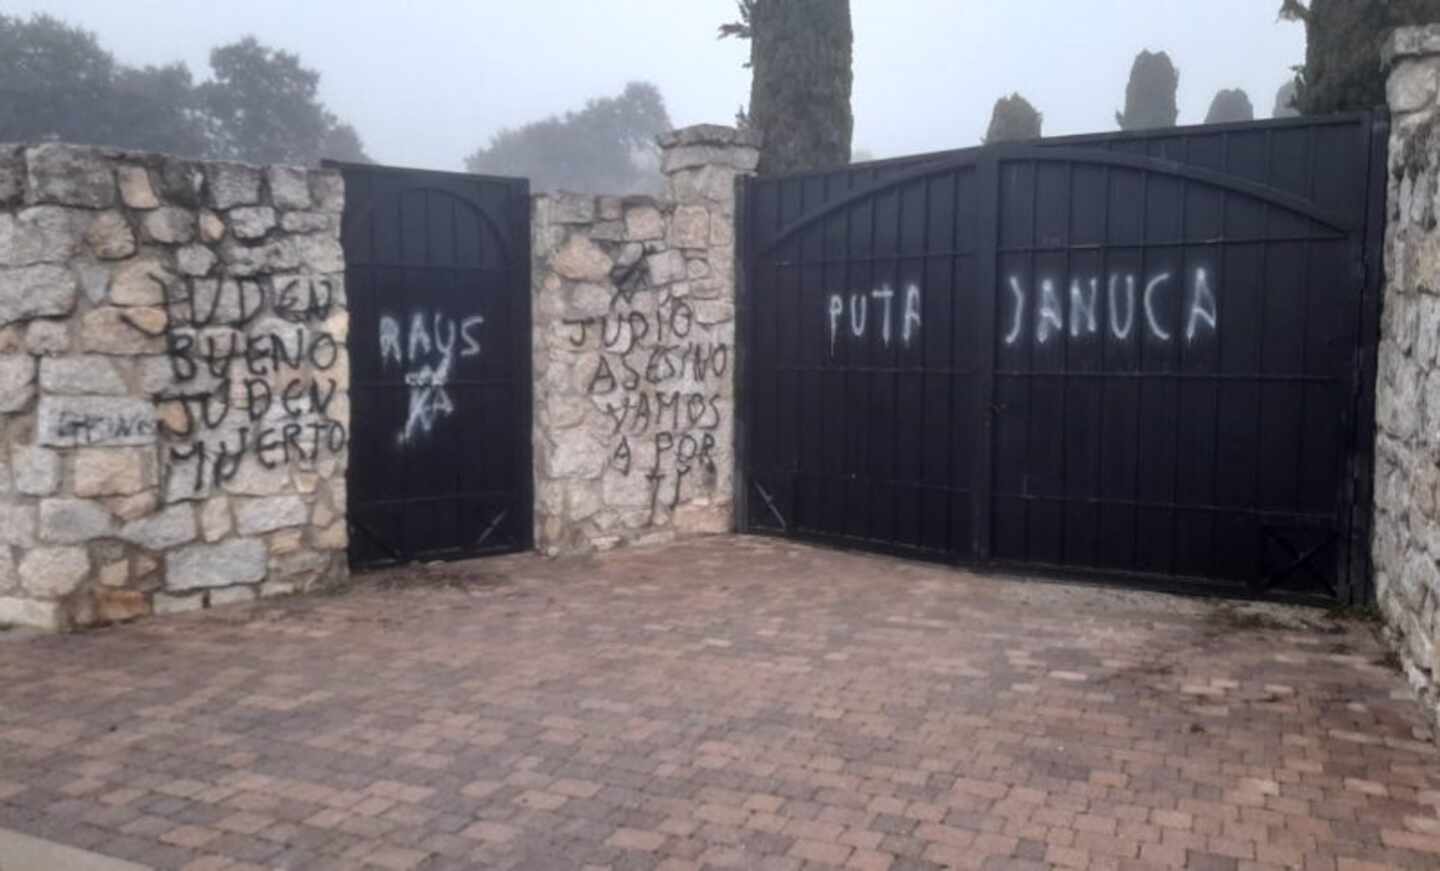 El cementerio judío de Madrid sufre un ataque vandálico con pintadas antisemitas